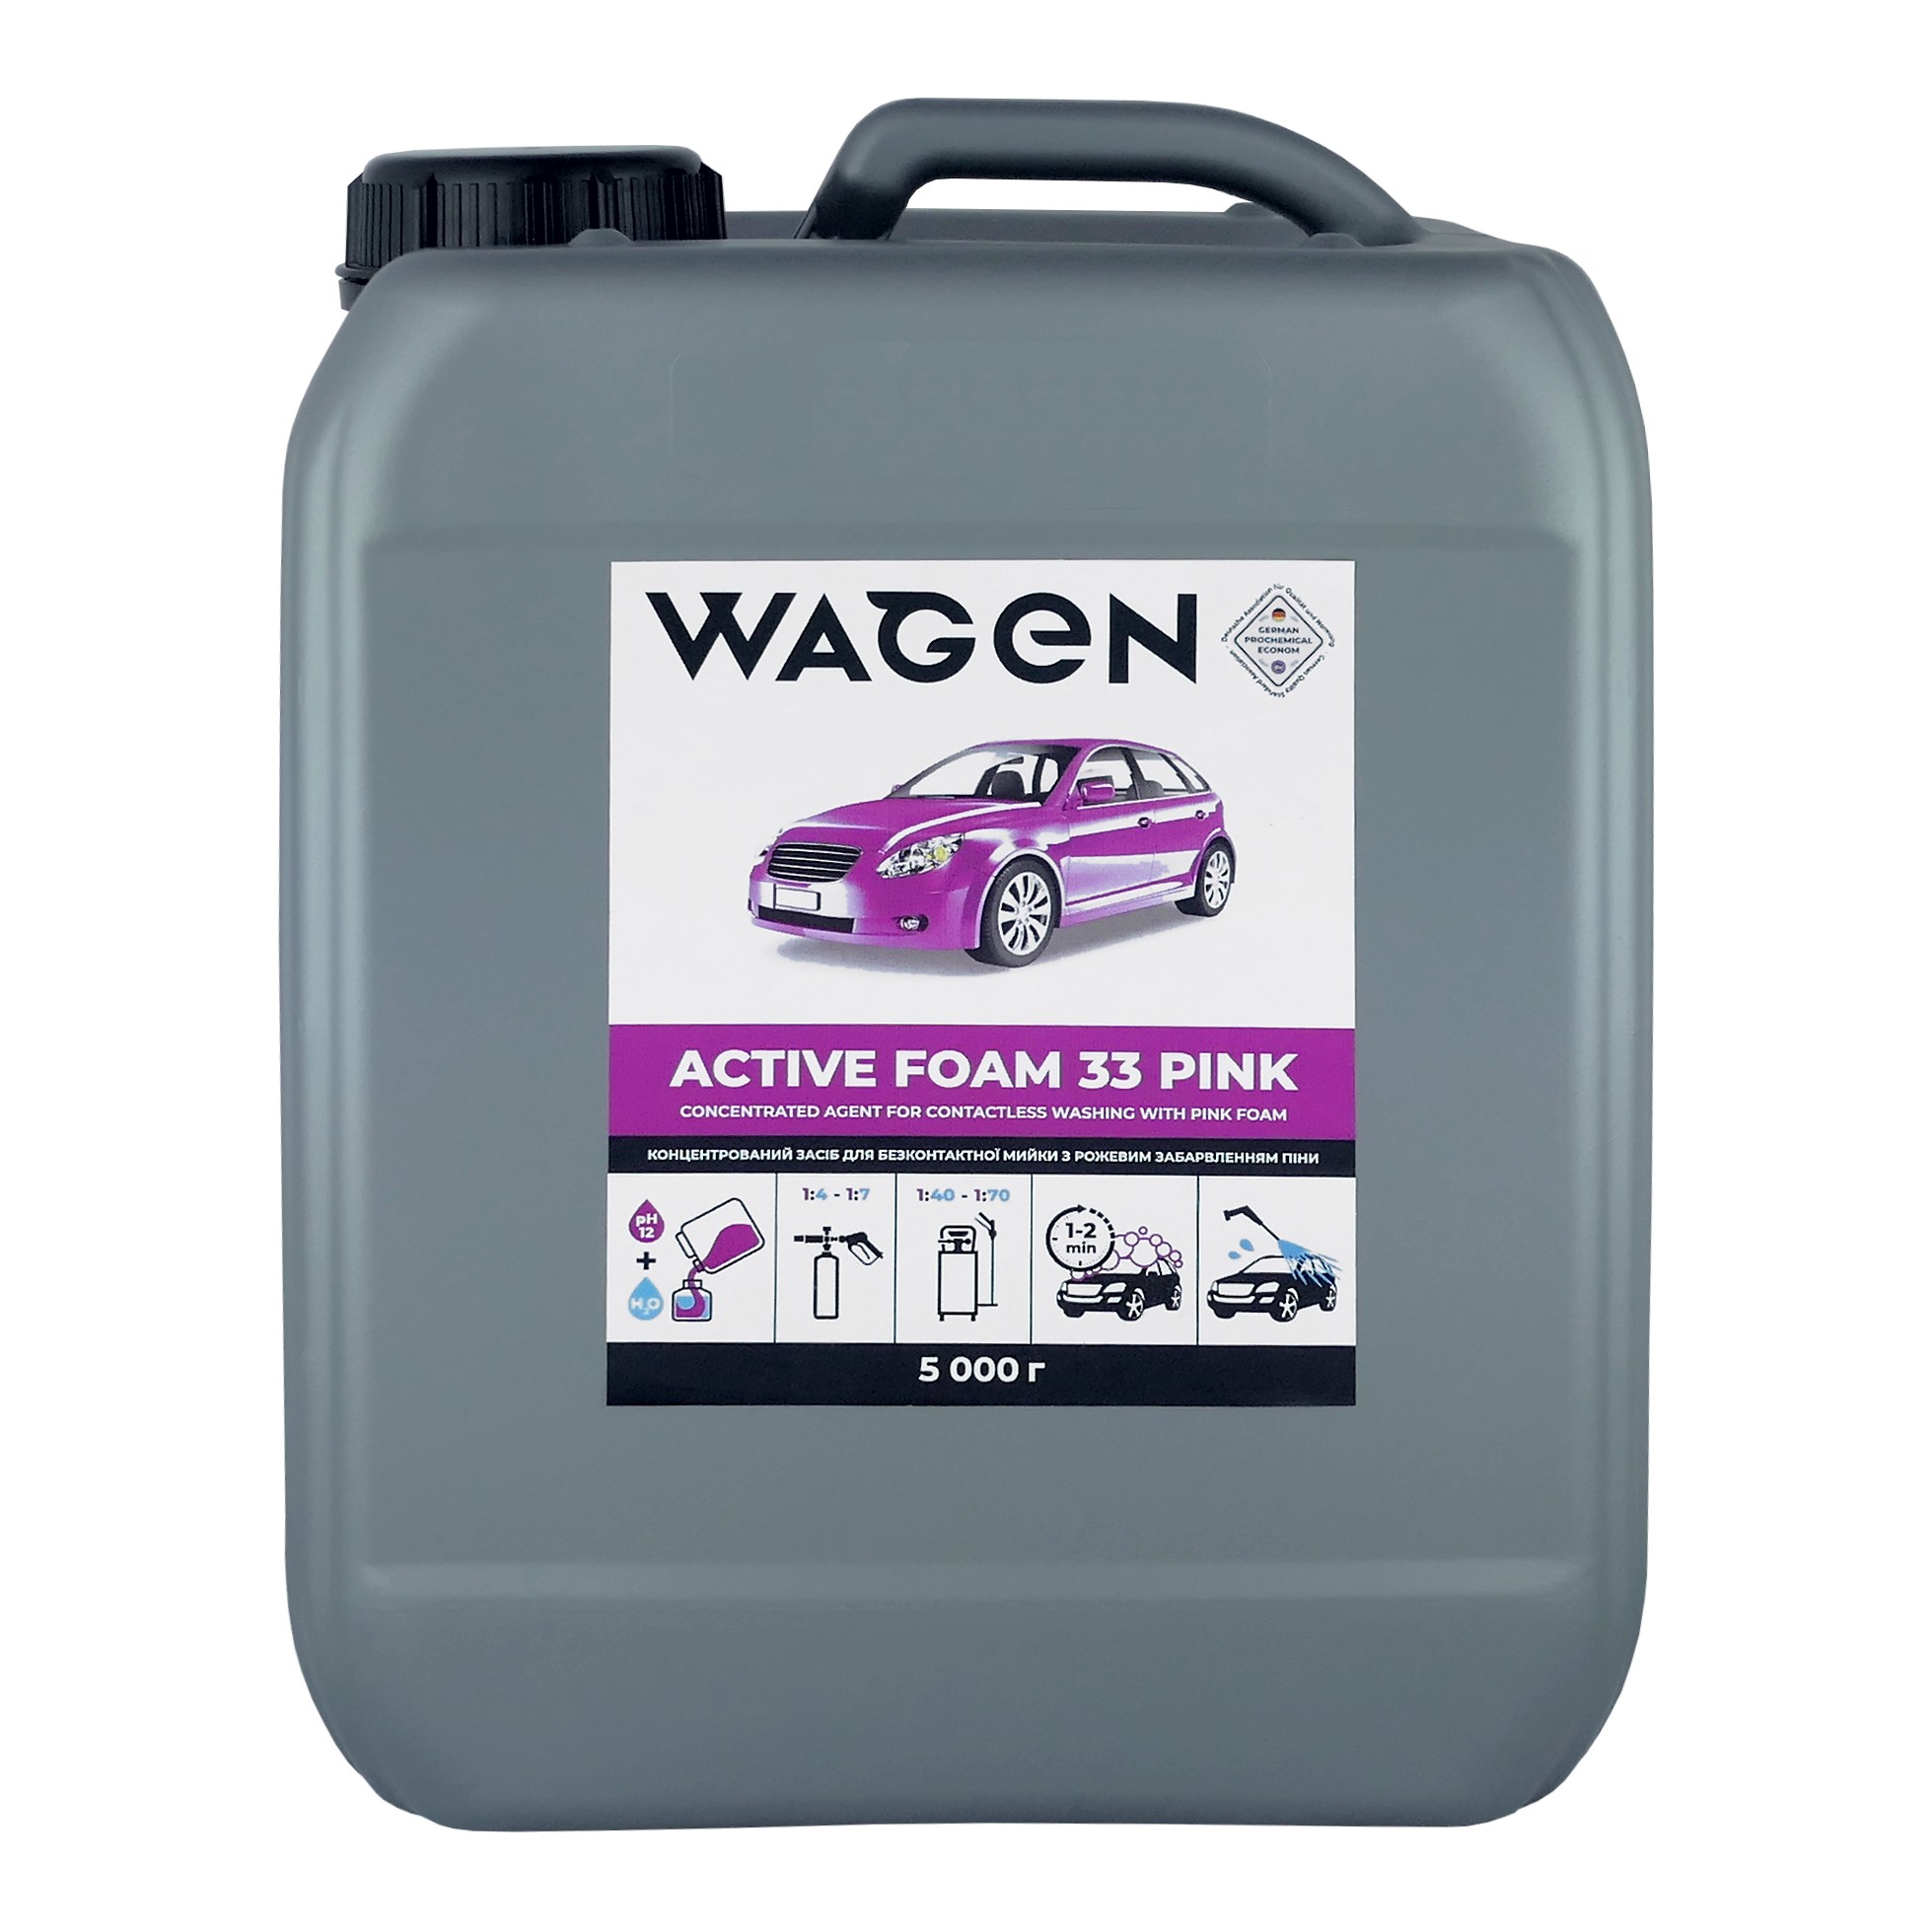 Wagen (DE+UK) WAGEN ACTIVE FOAM 33 PINK Koncentrovaný přípravek pro bezkontaktní mytí aut s růžovou pěnou - kanystr 5kg